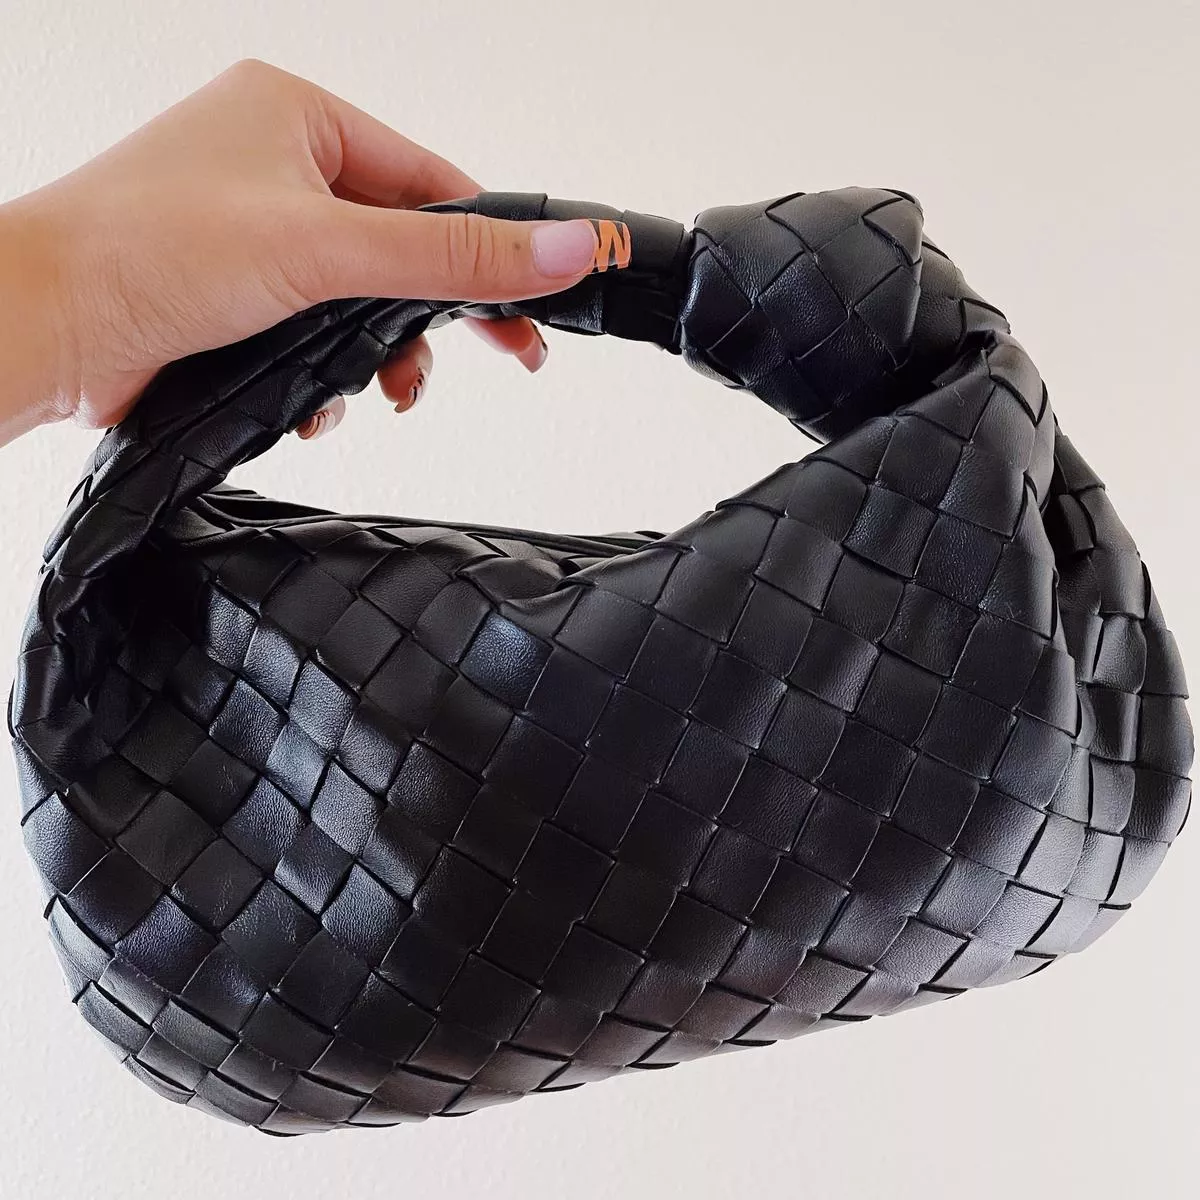 Bottega Veneta Mini Jodie Leather … curated on LTK